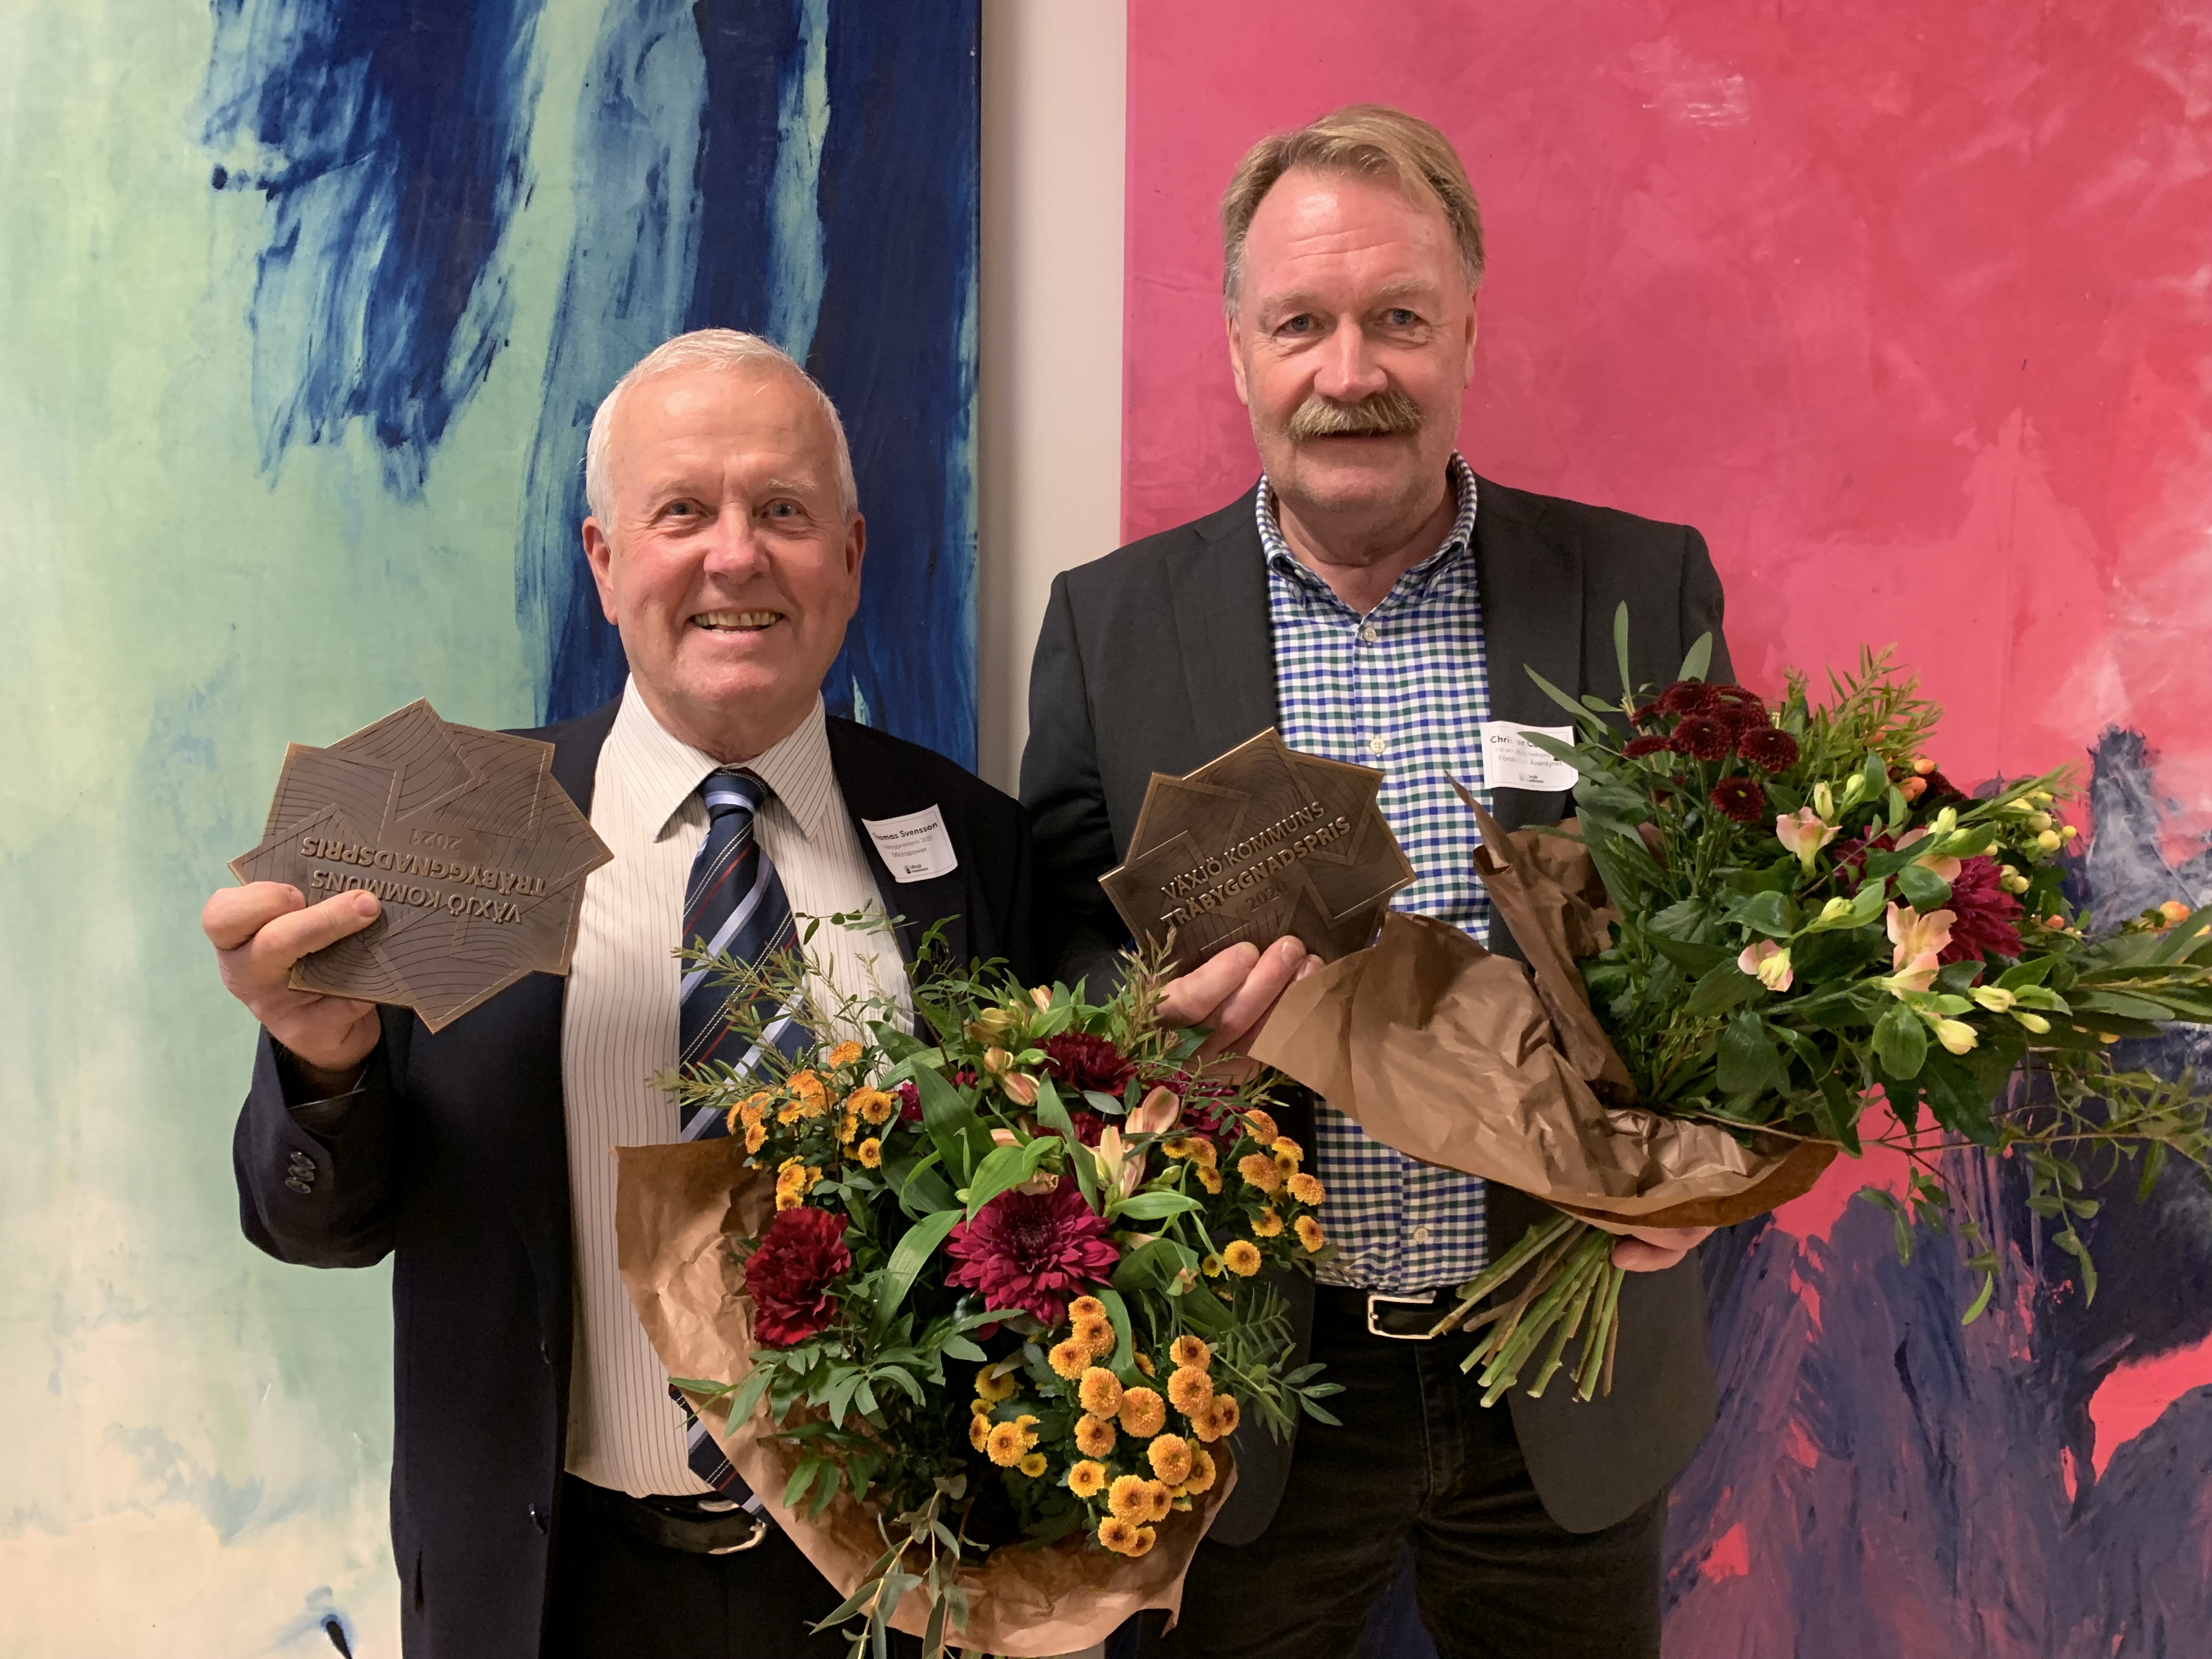 Thomas Svensson, vd Micropower fastighetsbolag, vann tillsammans med Arkitektbolaget och GBJ-bygg årets träbyggnadspris. Christer Carlsson, vd Vöfab, vann tillsammans med Peab och LBE Arkitekter årets byggnadspris för förskolan Äventyret.